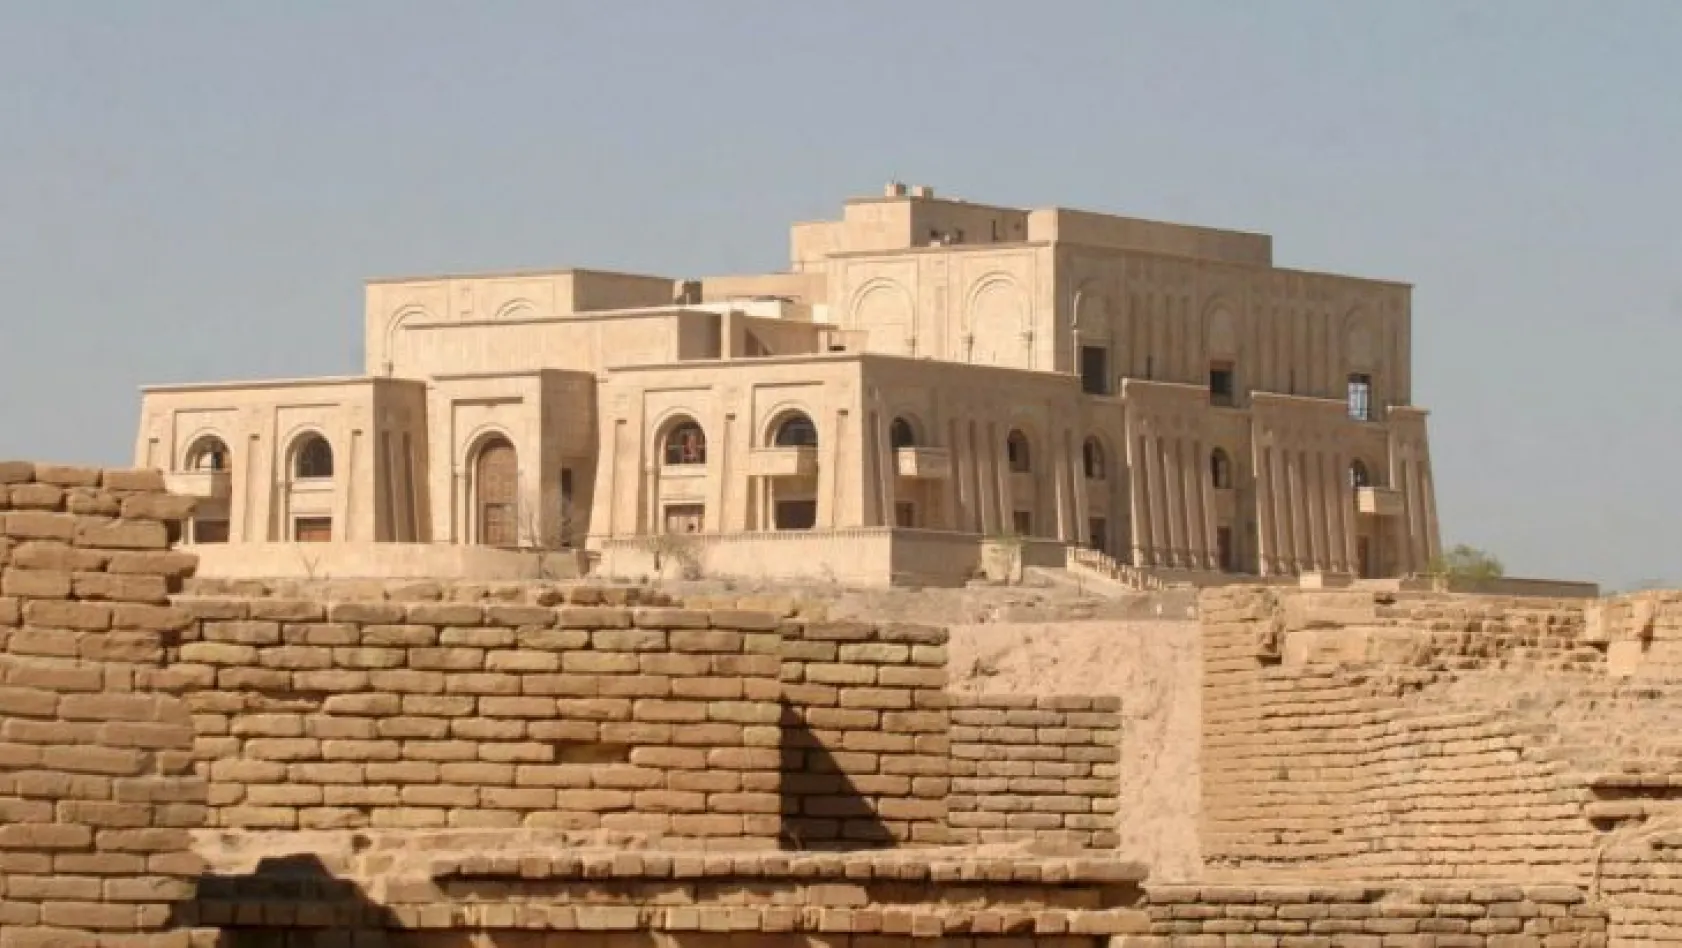 Saddam'ın Babil'deki sarayı müze olacak